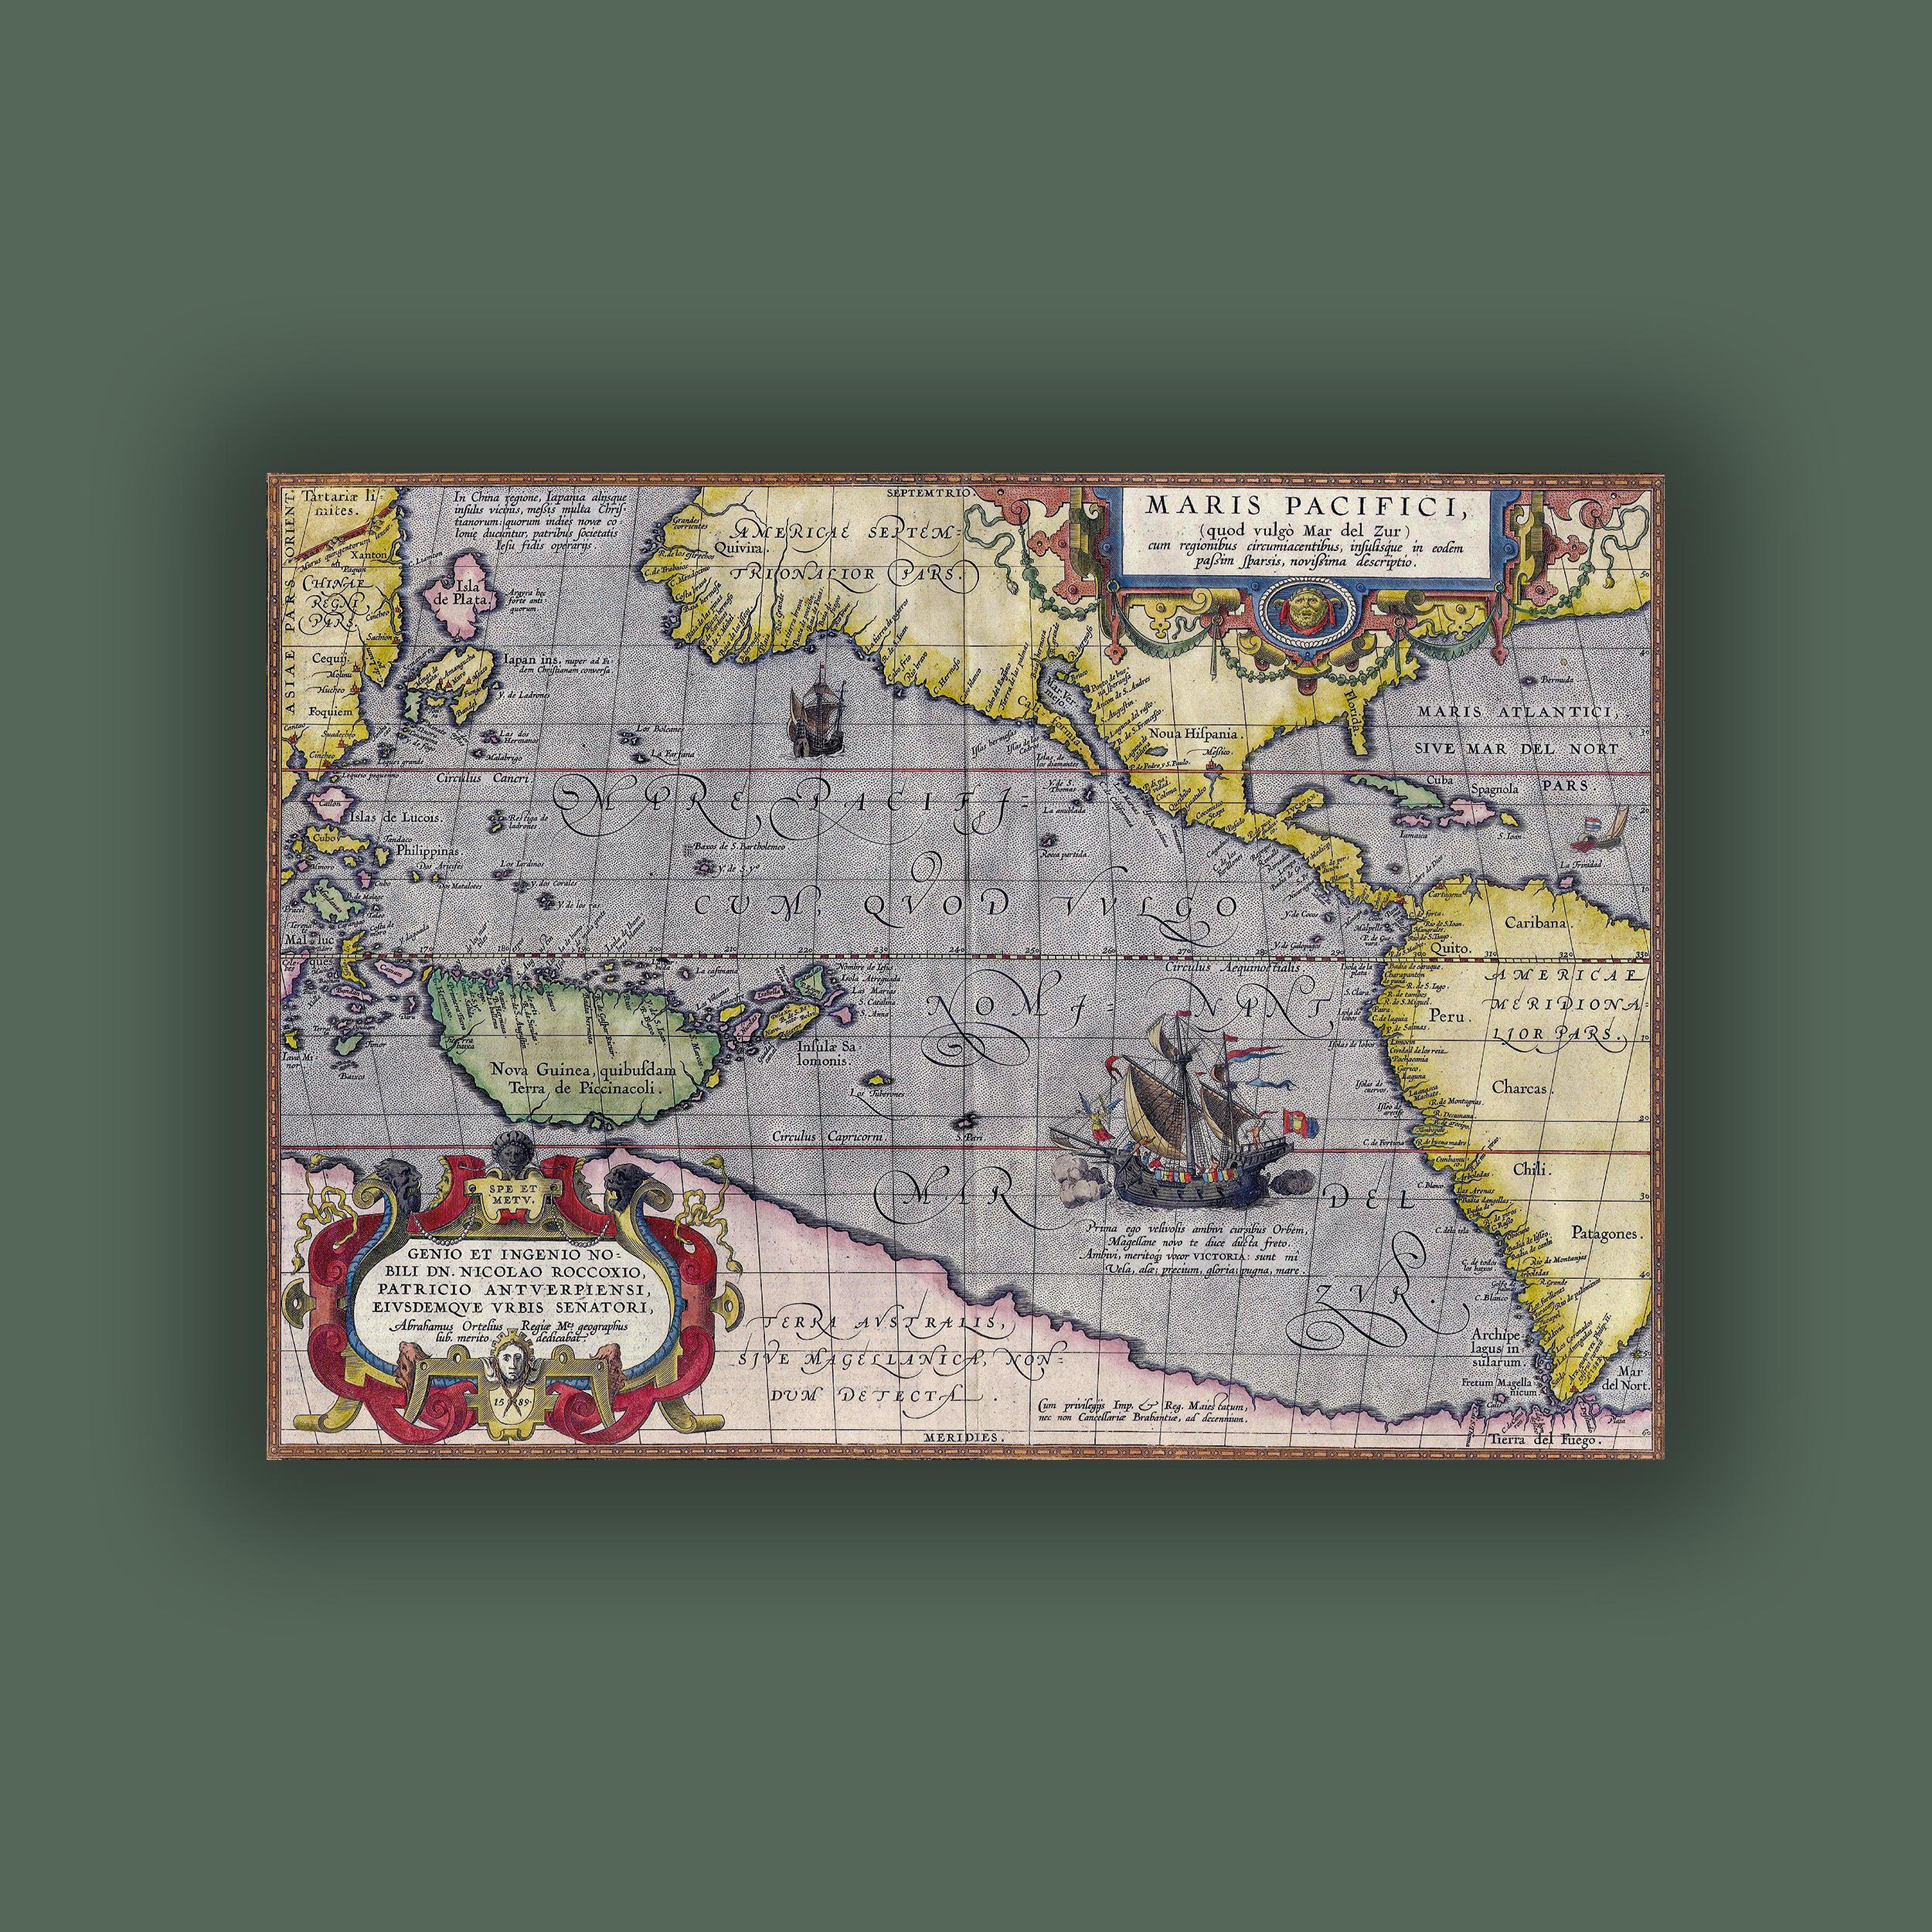 Maris Pasifici - Büyük (Pasifik) Okyanus Haritası Poster - 1606